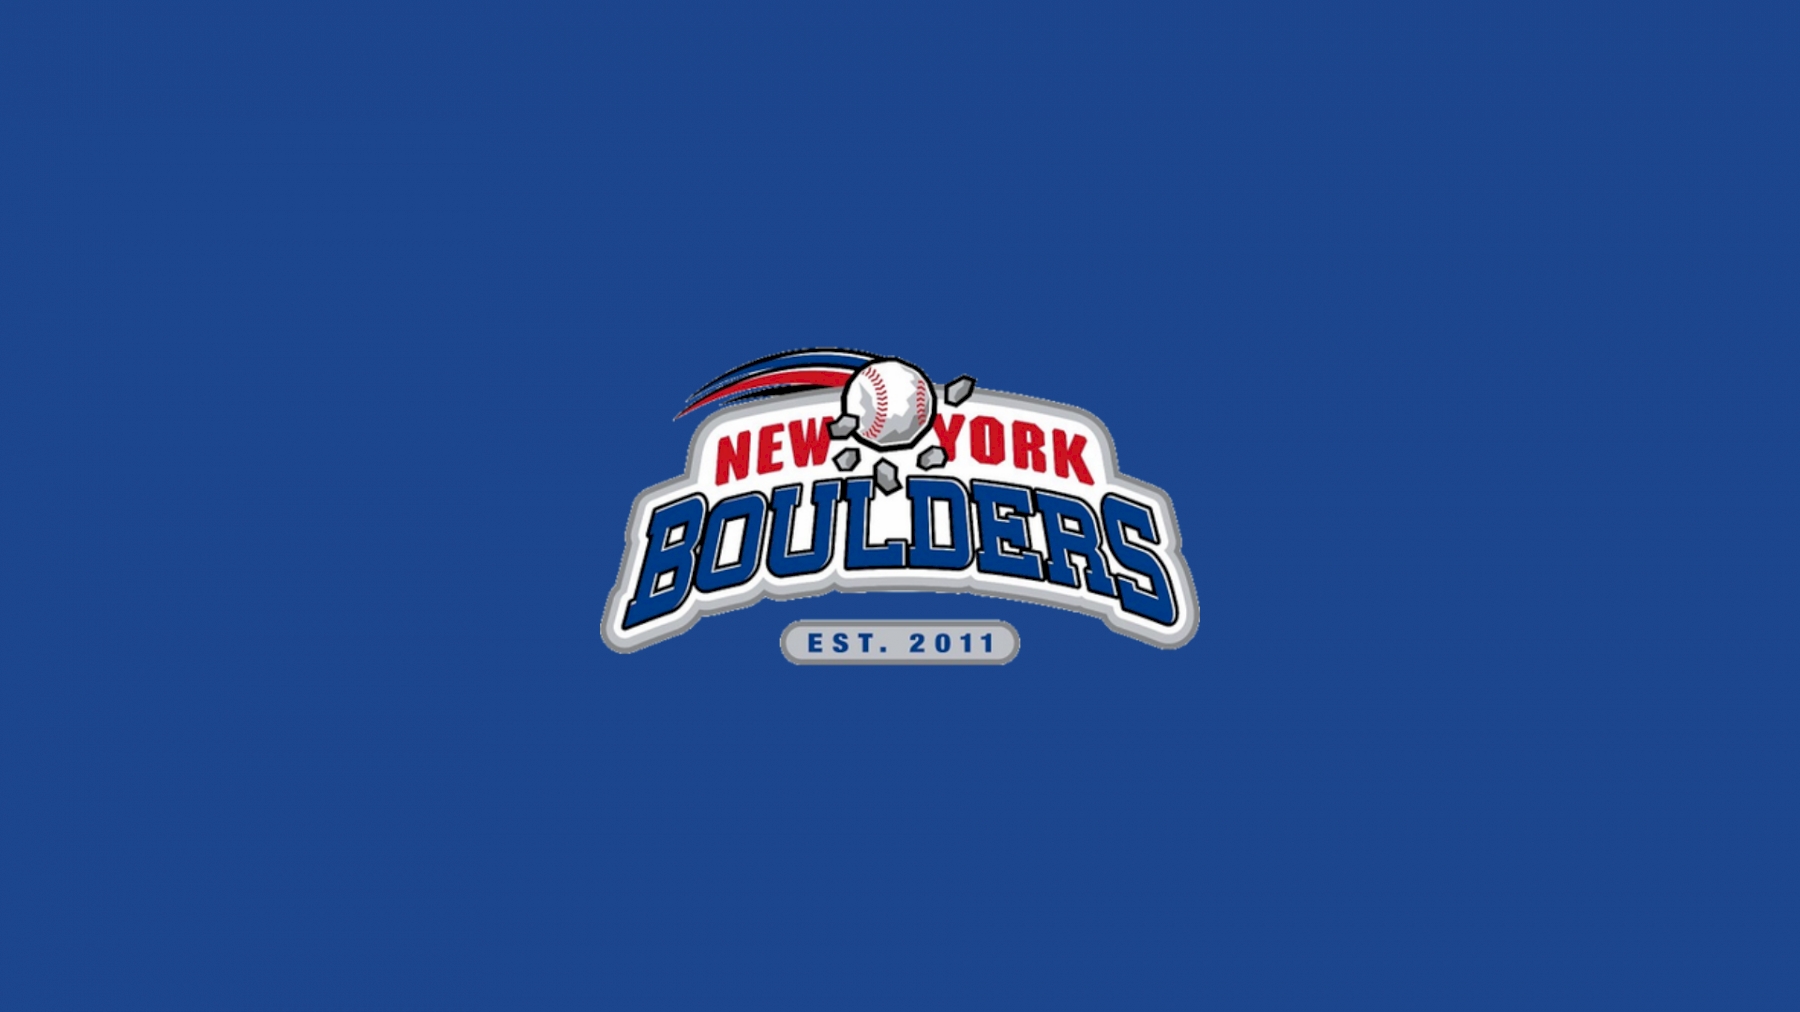 New York Boulders FloBaseball Baseball